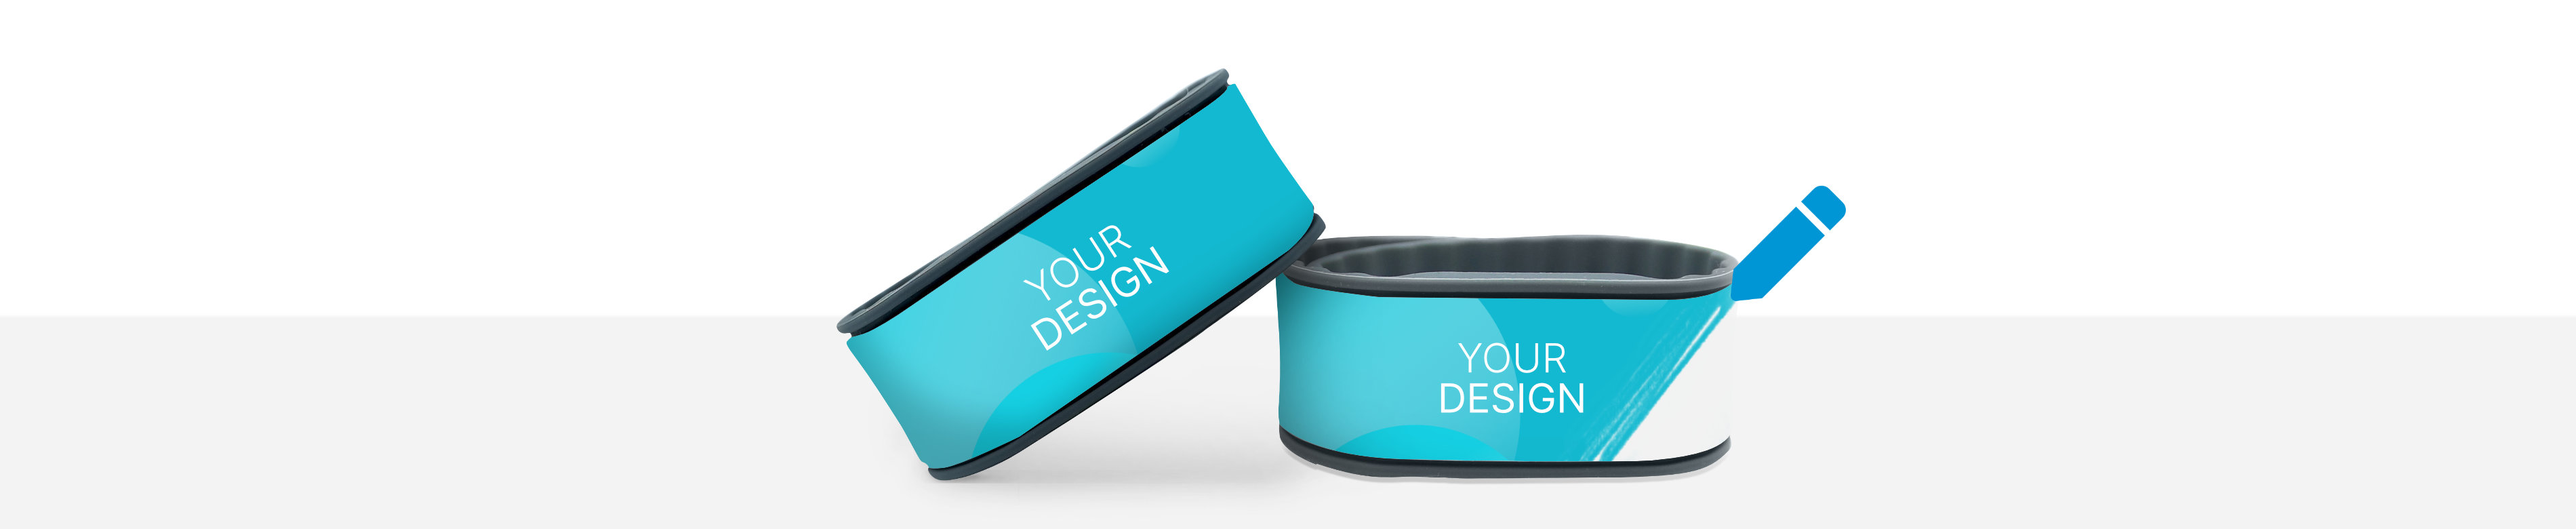 NFC Armbänder mit der Aufschrift "Your Design"